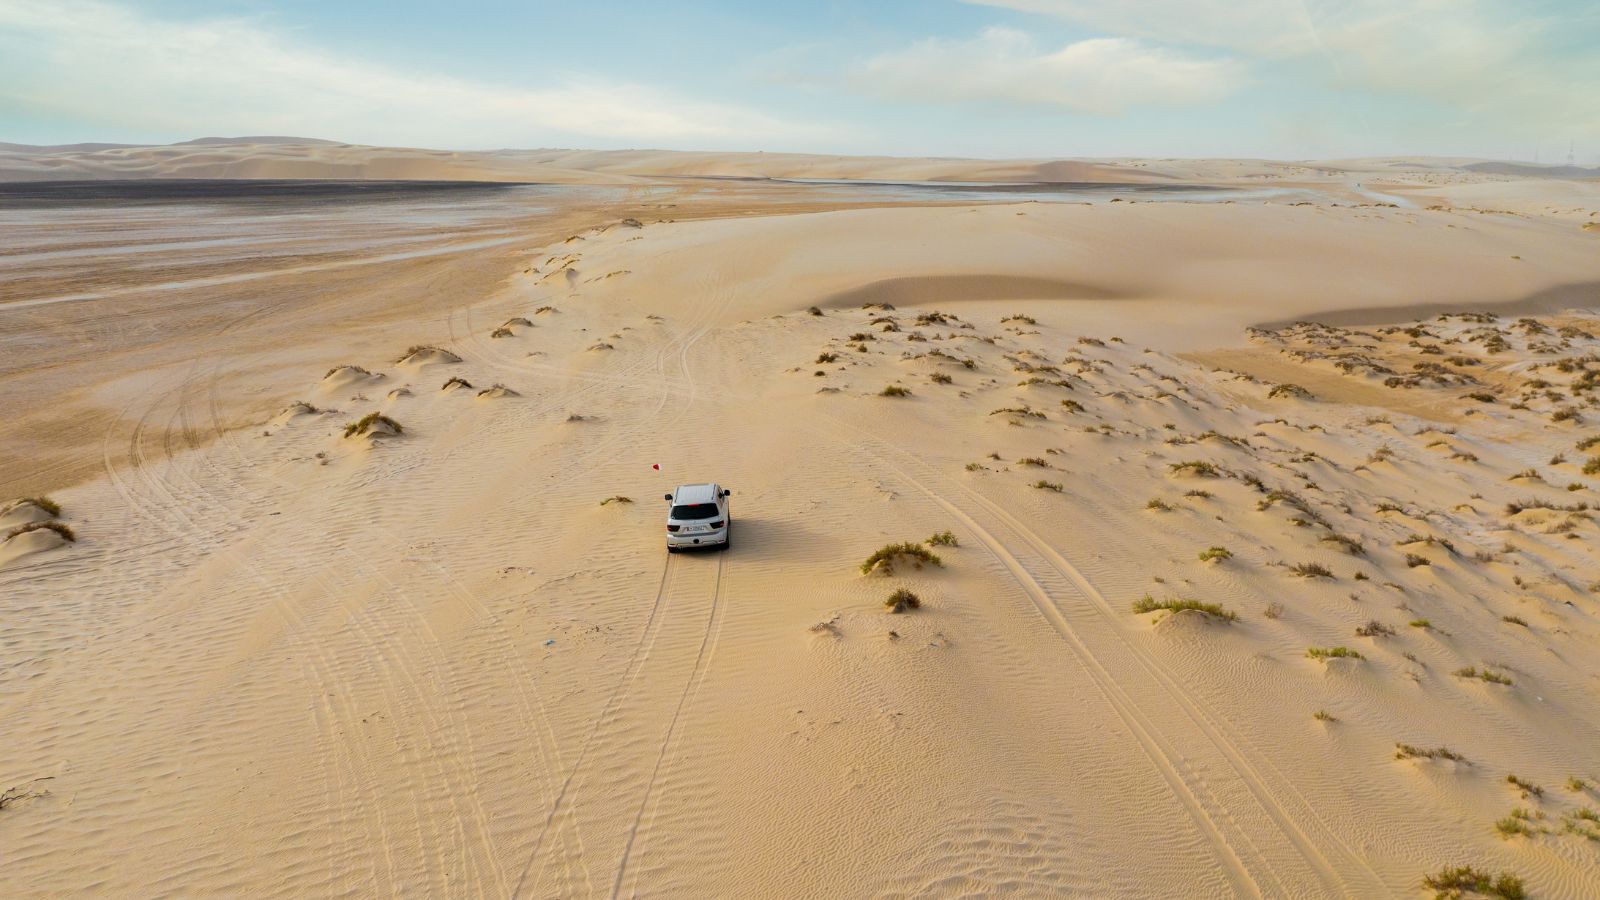 Sealine Desert Sand Dunes, Qatar